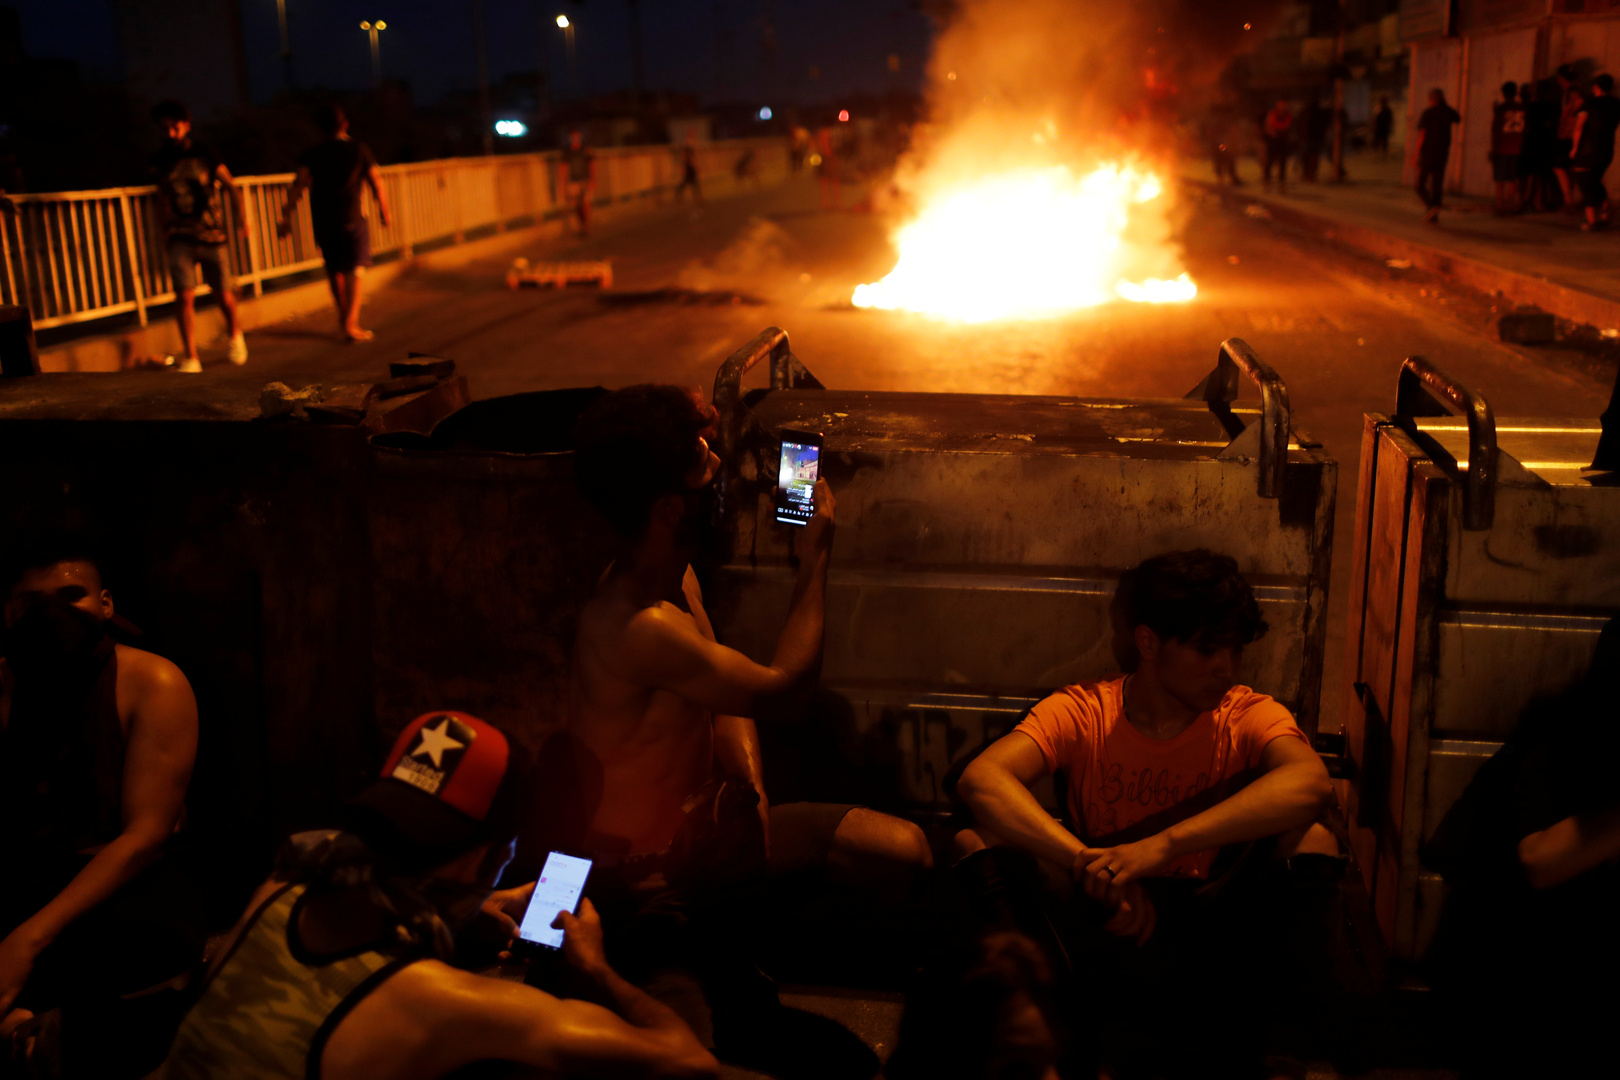 محتجون يحرقون مكتب مجلس النواب في البصرة